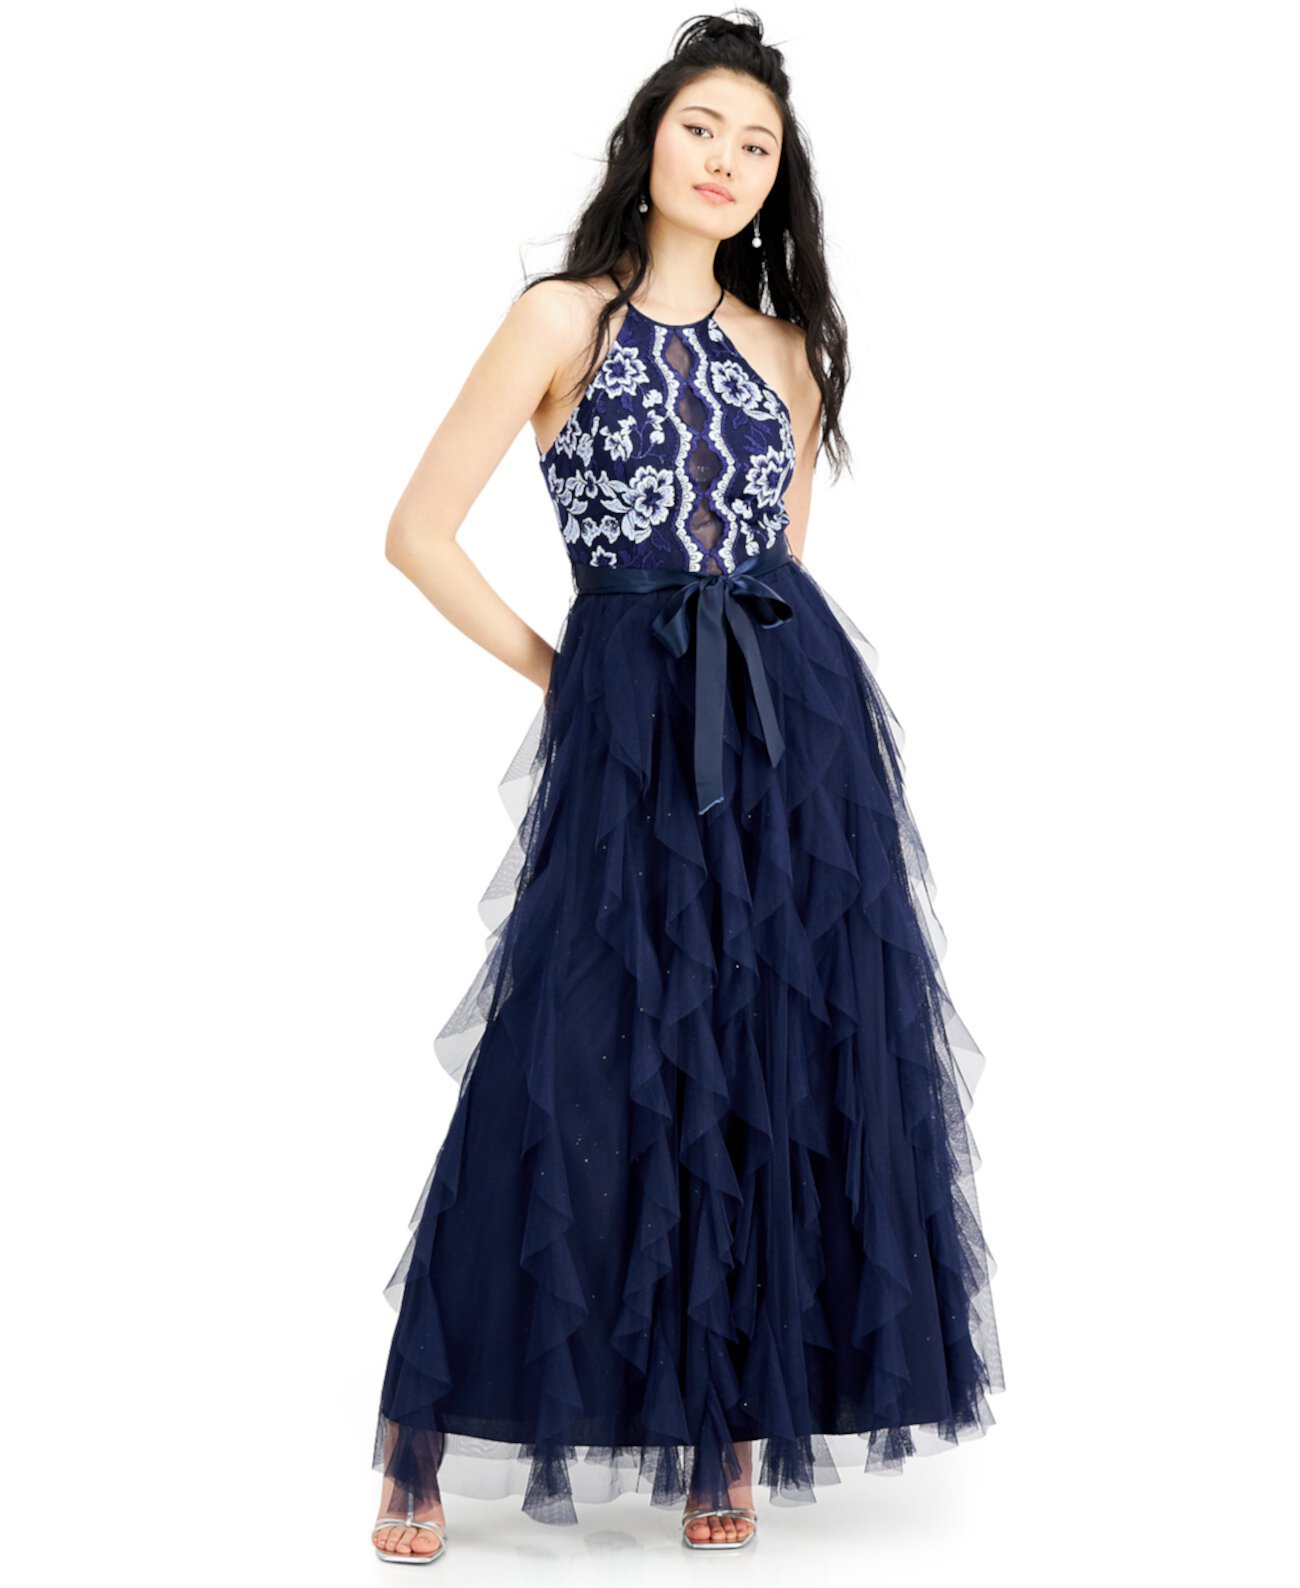 Юниорское платье с многослойной юбкой с вышивкой, созданное для Macy's Teeze Me